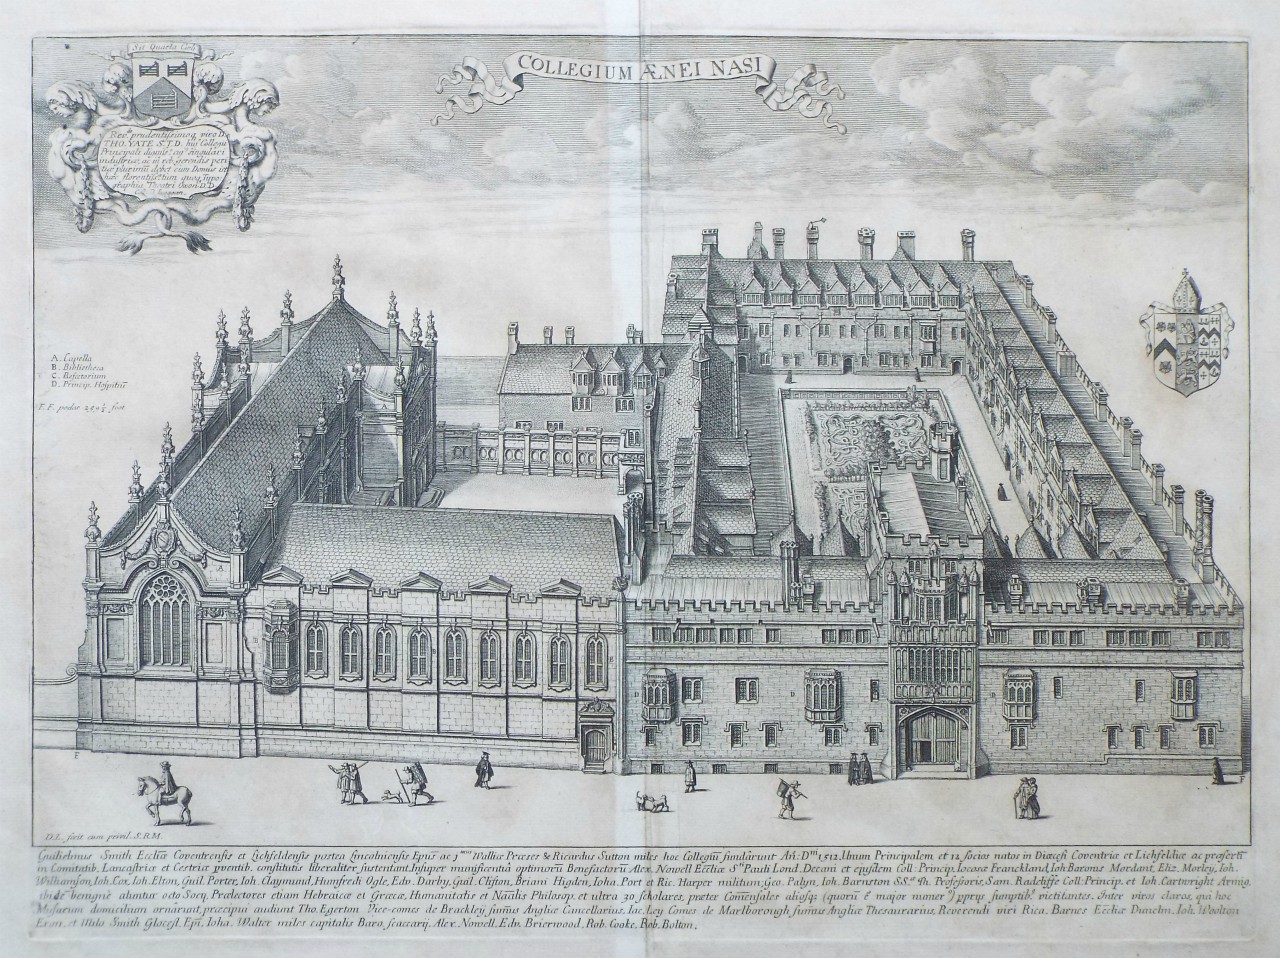 Print - Collegium Aenei Nasi (Brasenose College) - Loggan